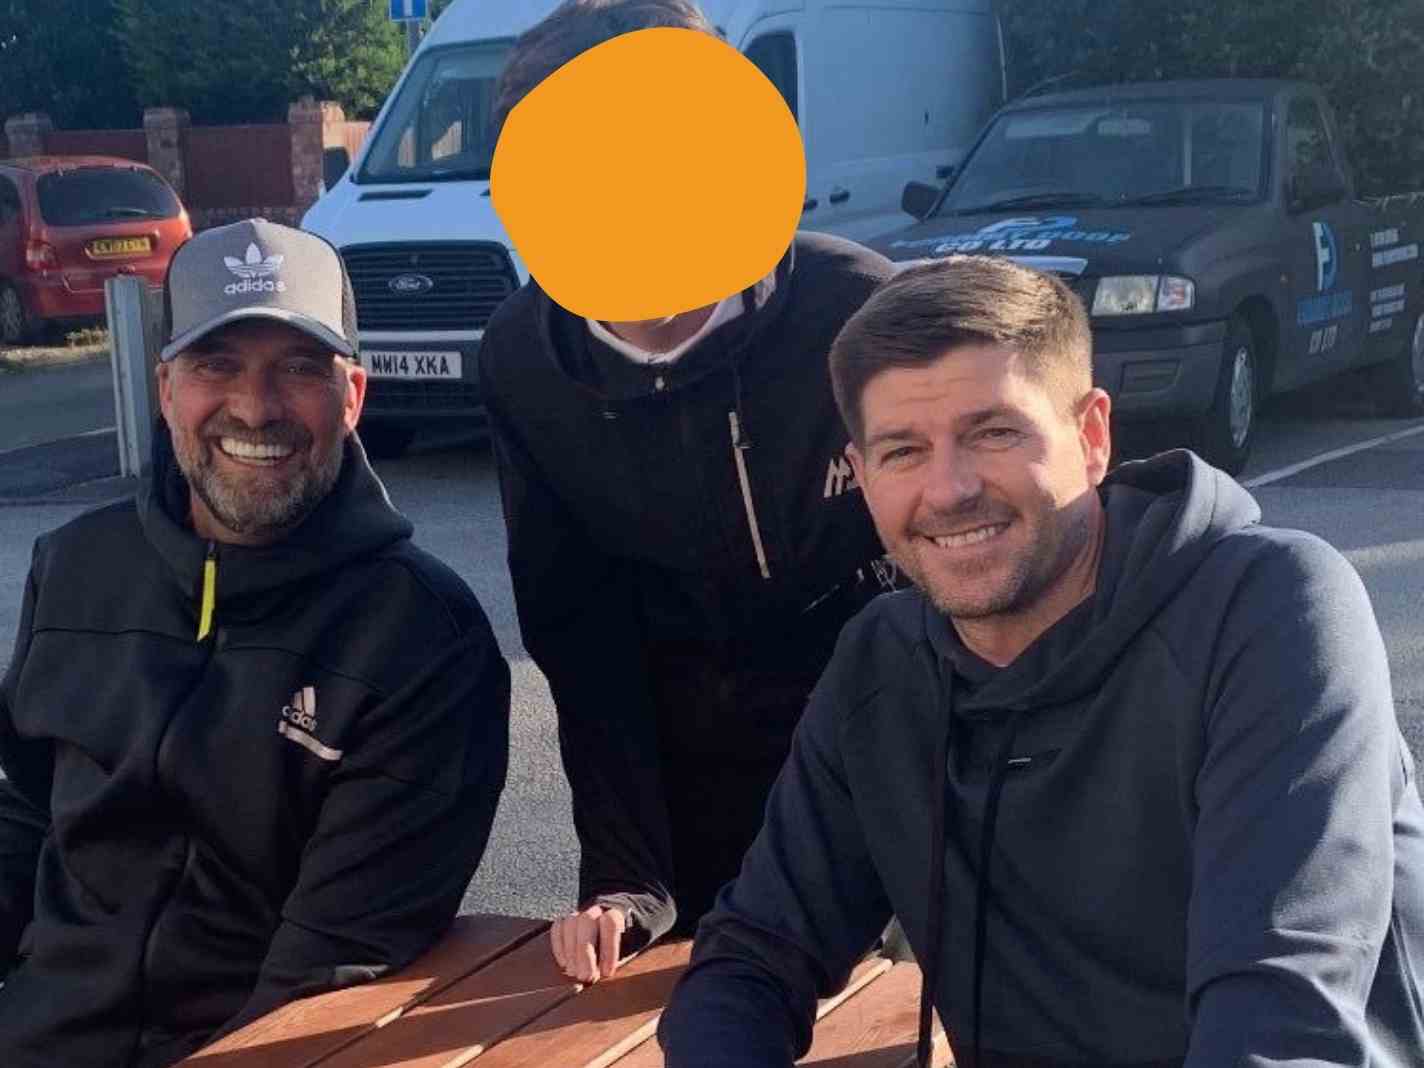 Jurgen Klopp and Steven Gerrard and Liverpool fan at a pub.